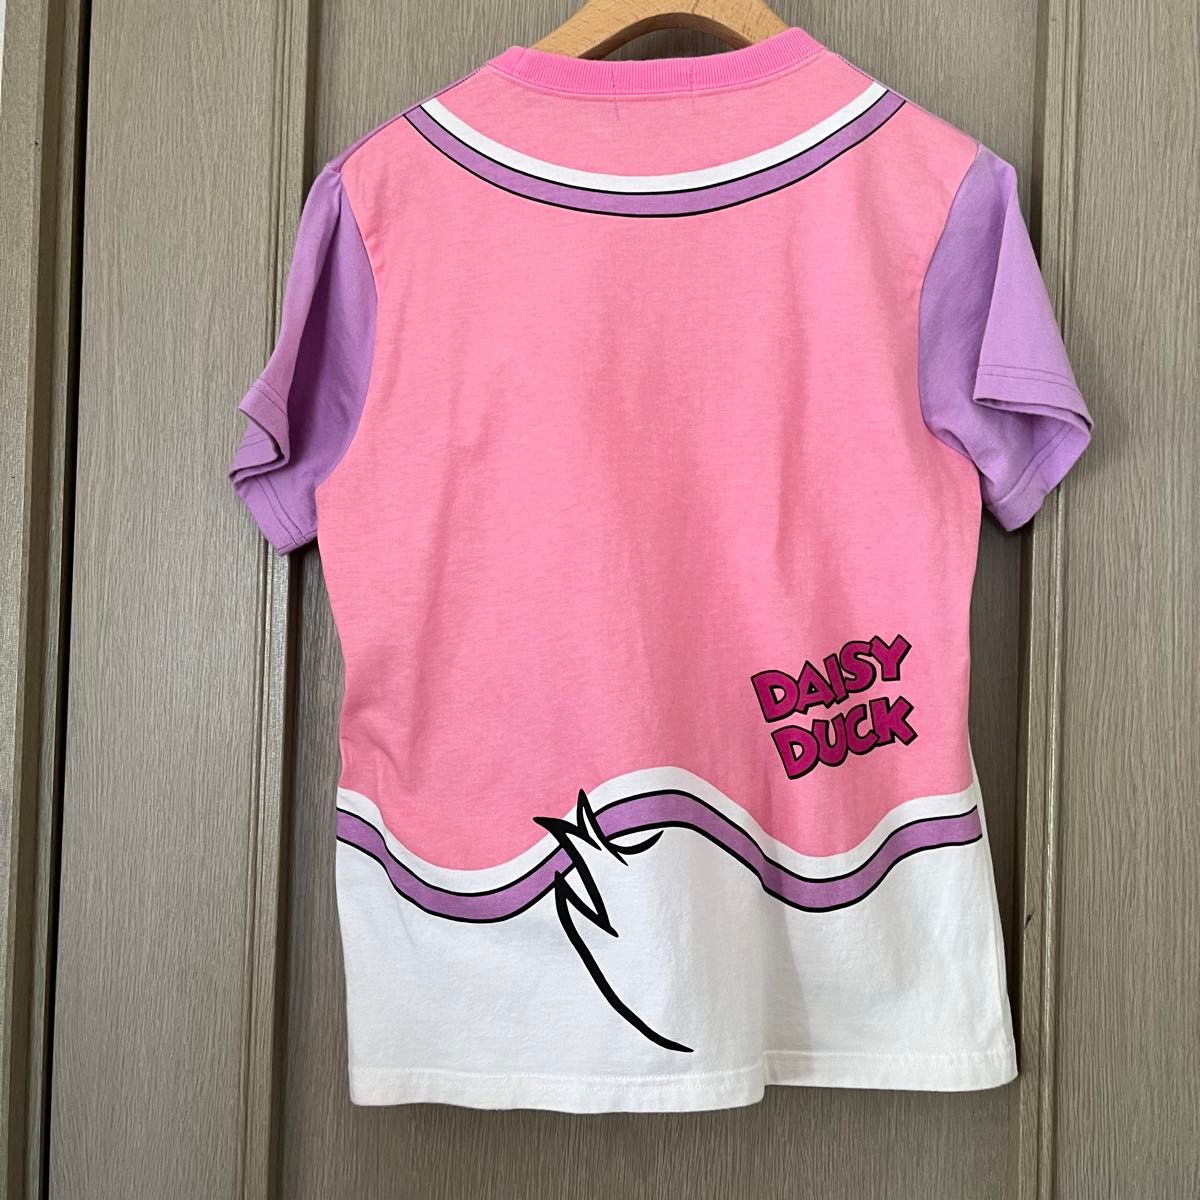 【Disney】 Tシャツ 半袖 半袖Tシャツ トップス ビックフェイス デイジーダック ミニーマウス 2枚セット 150cm